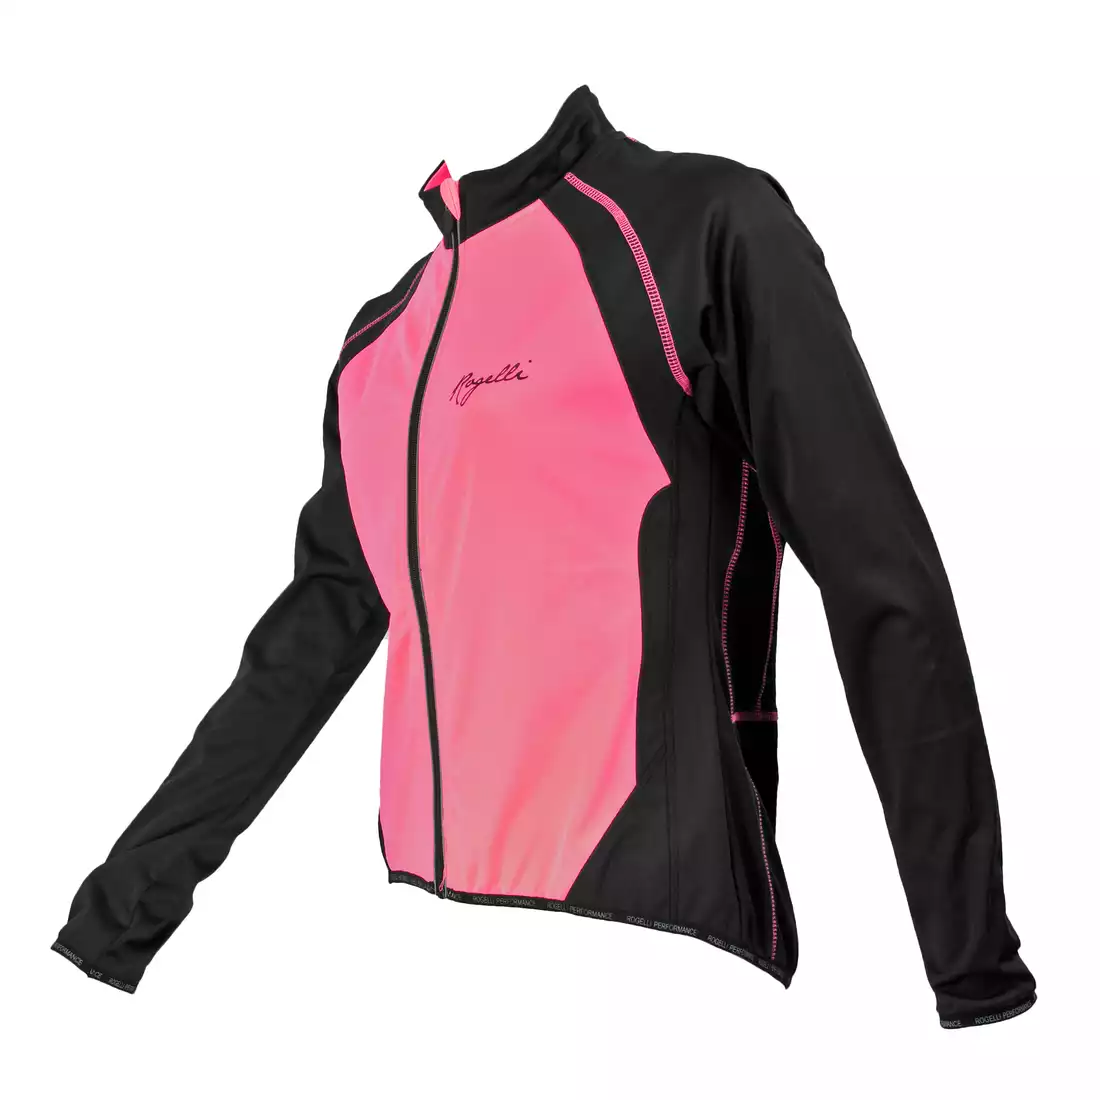 ROGELLI BICE - damska kurtka rowerowa Softshell, kolor: Różowy